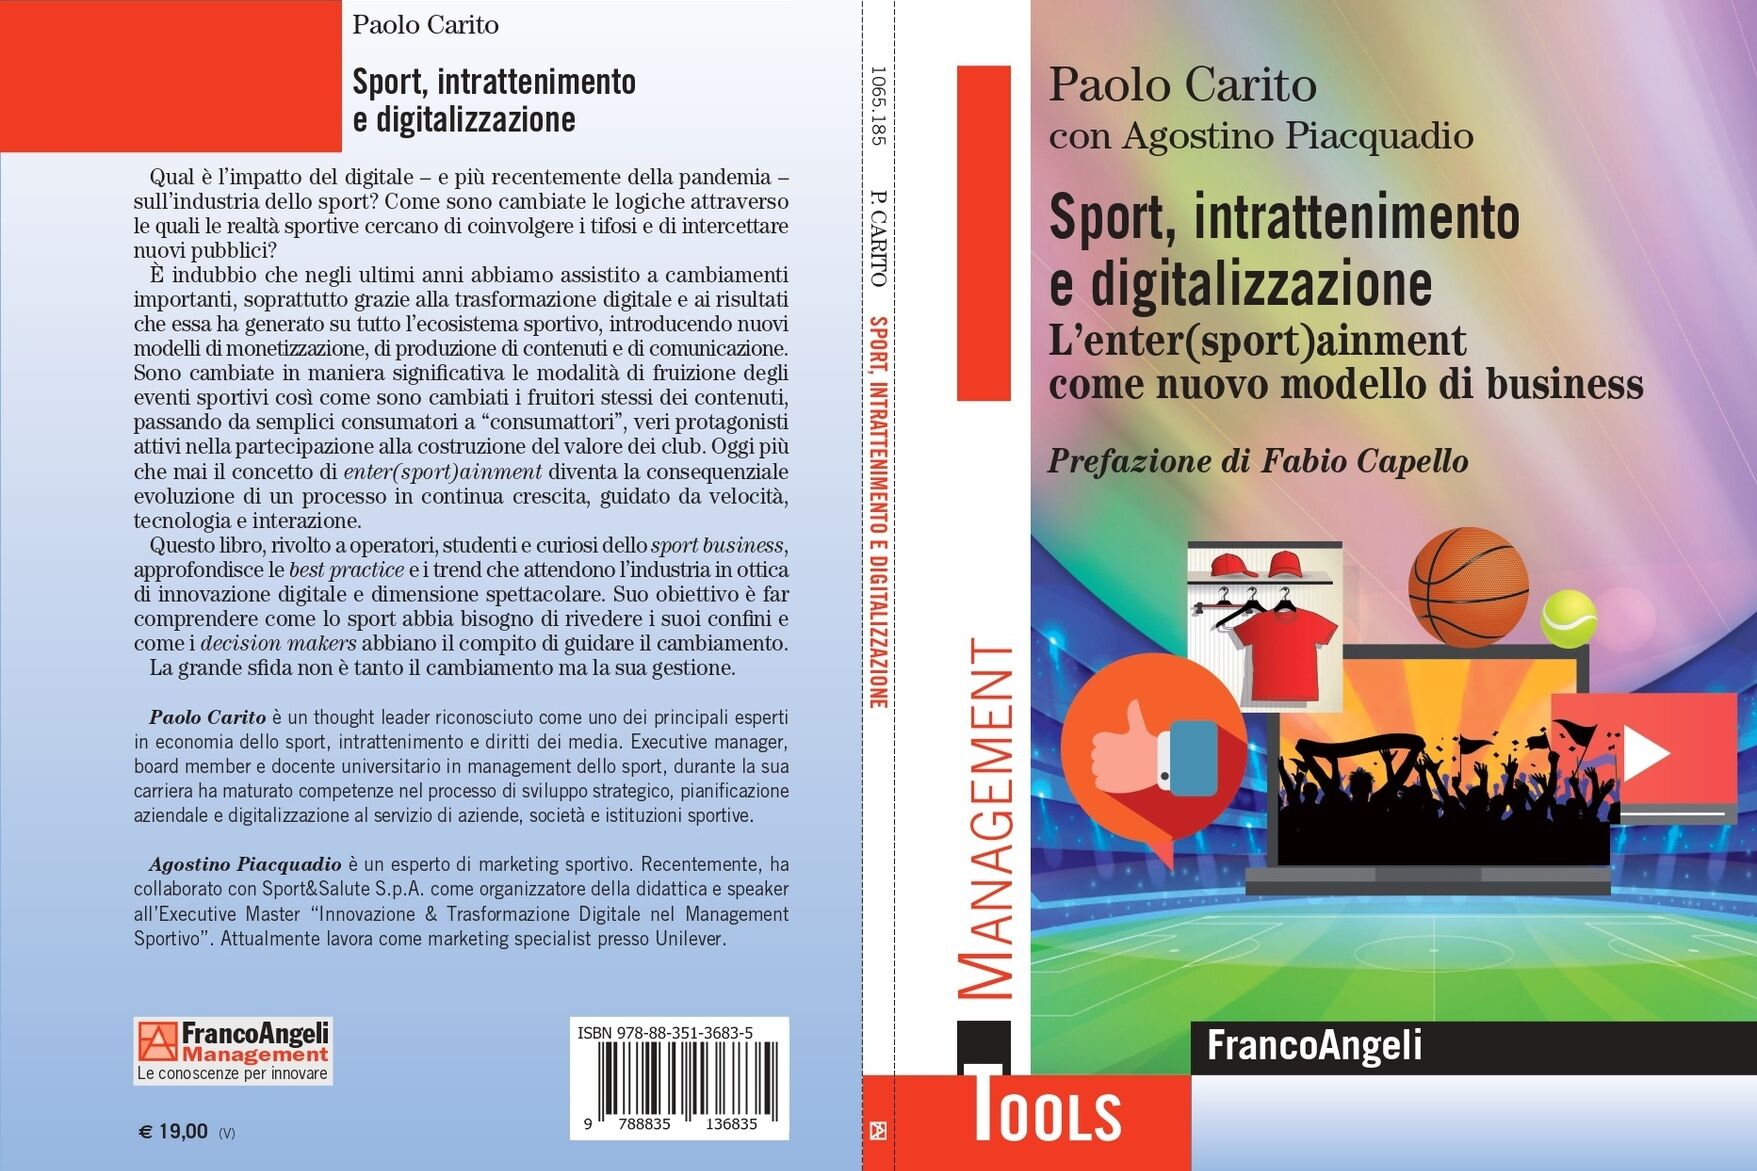 entersportainment: a „Sport, szórakozás és digitalizálás. Enter(sport)ainment, mint új üzleti modell”, írta Paolo Carito, Agostino Piacquadioval, és kiadó: Franco Angeli Editore